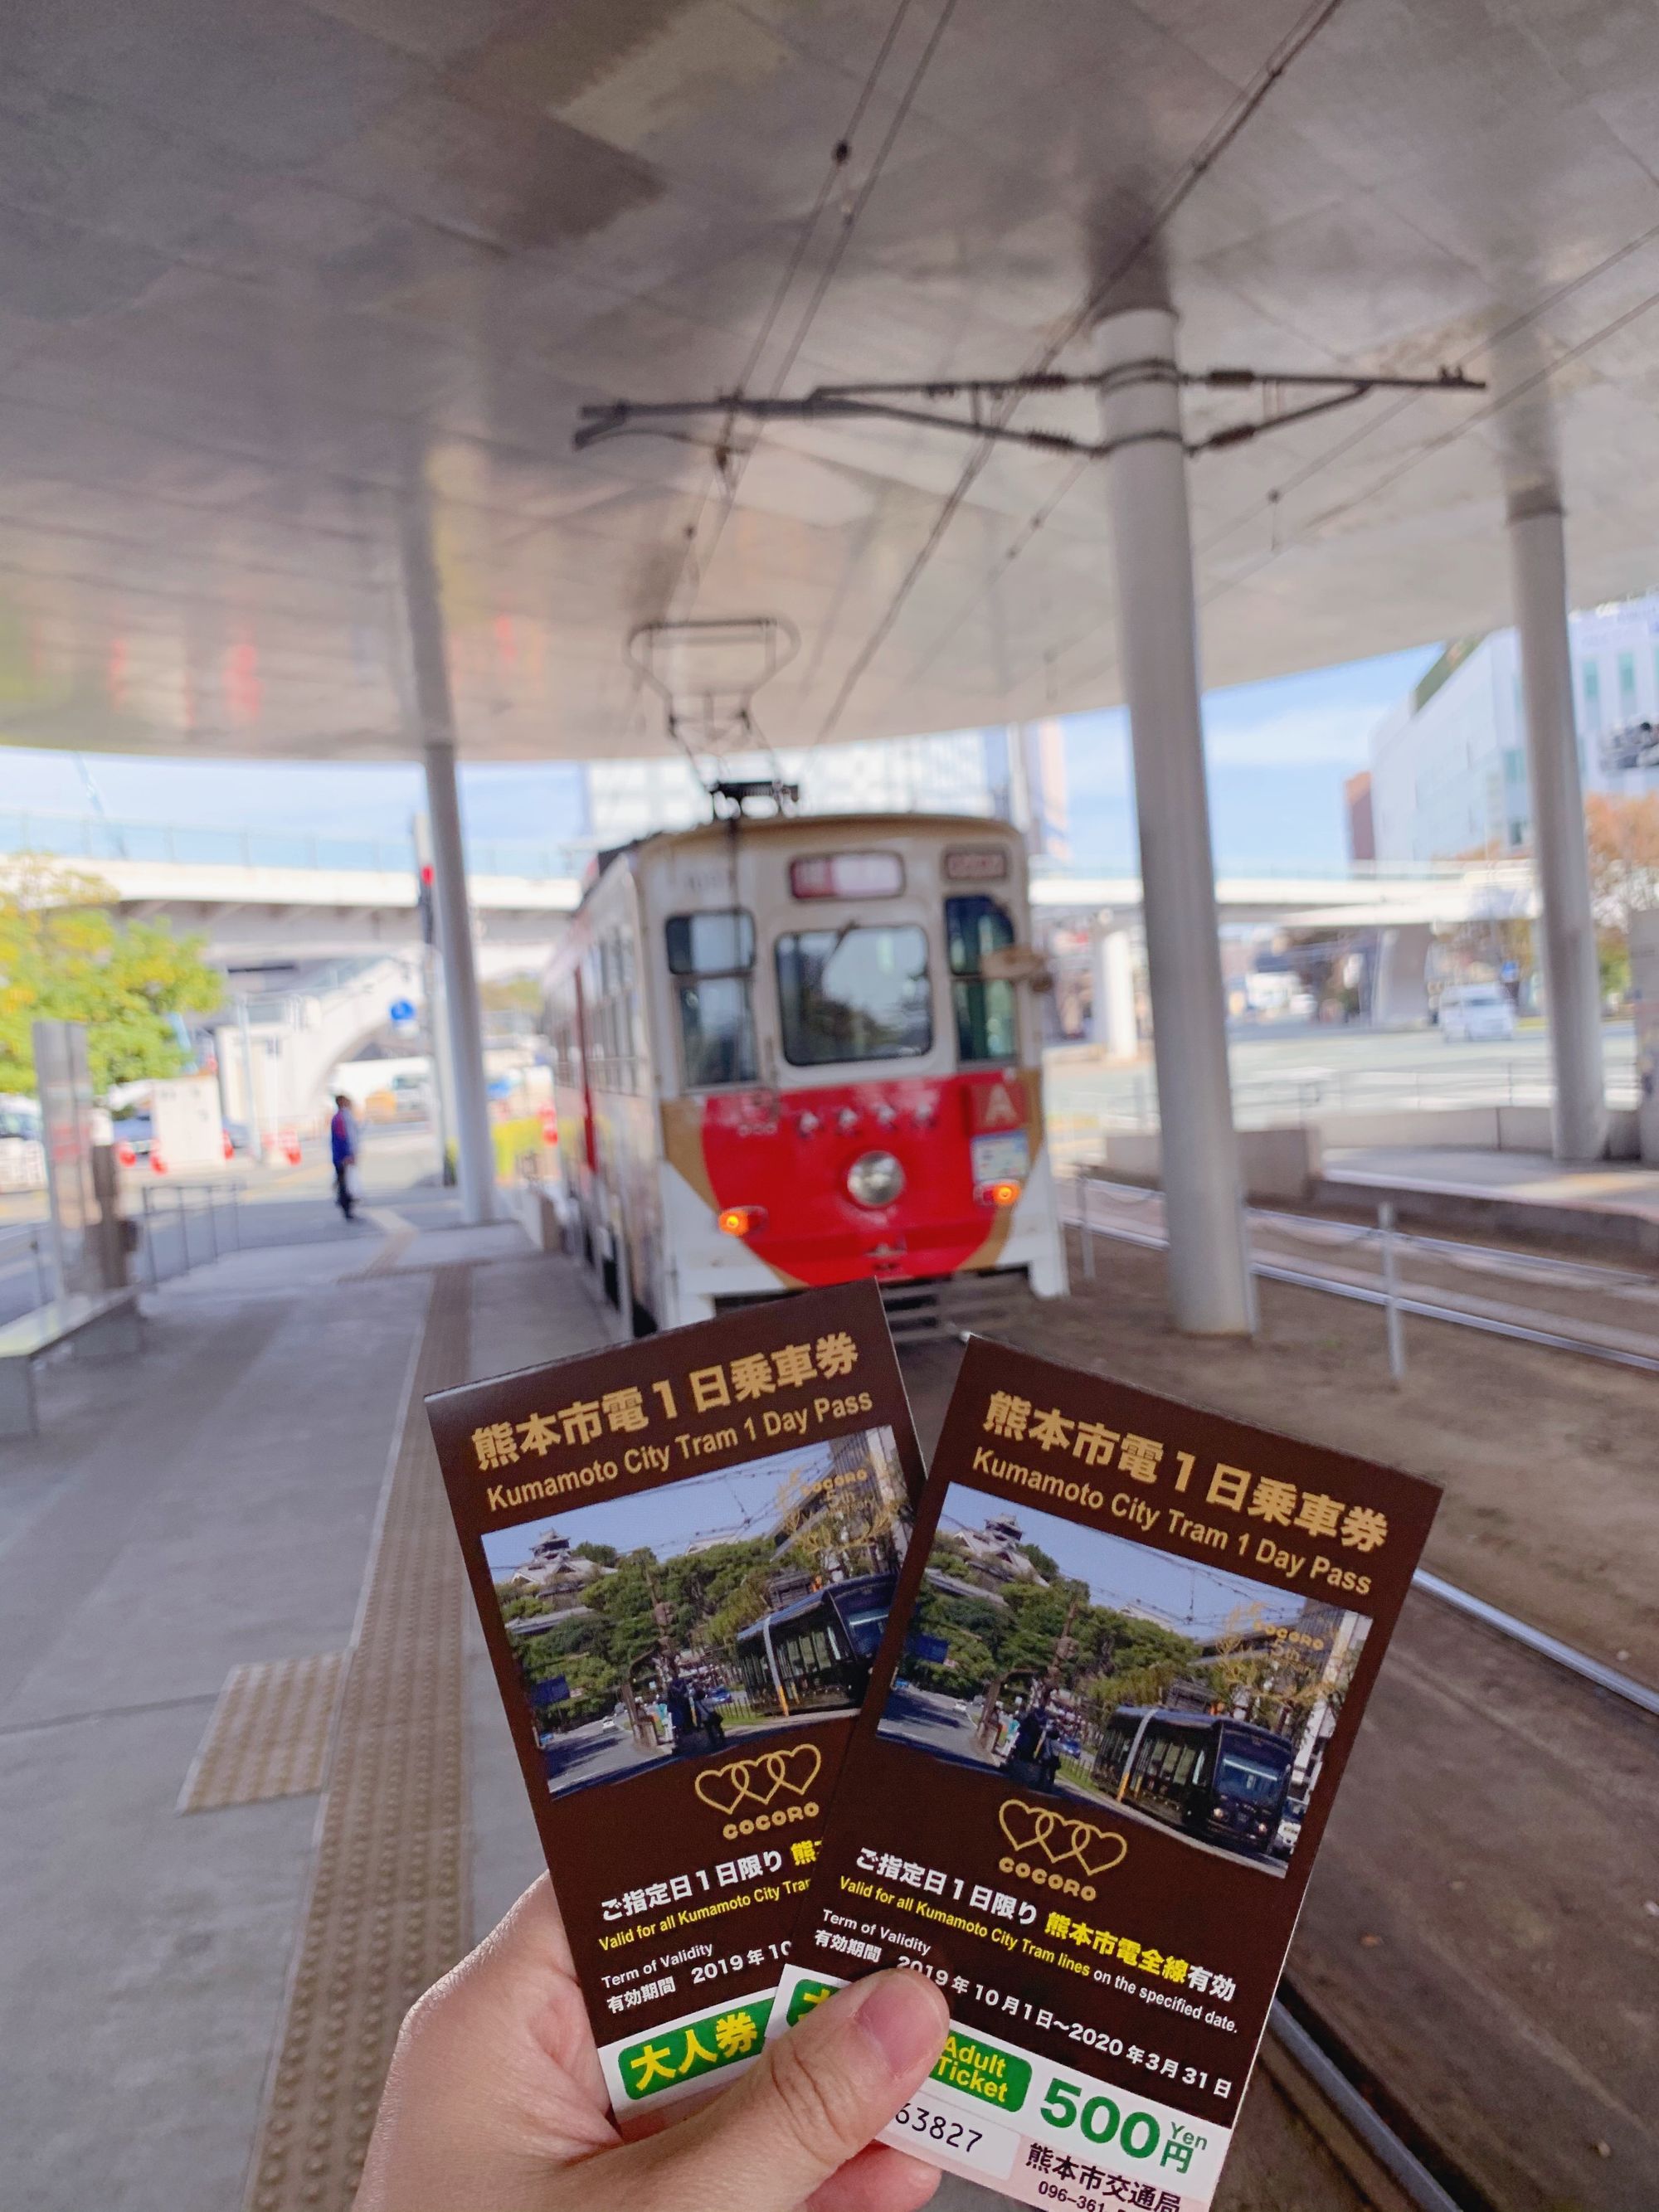 Kumamoto City Tram 1 Day Pass M40310R1 Kumamoto City Tram 1 Day Pass